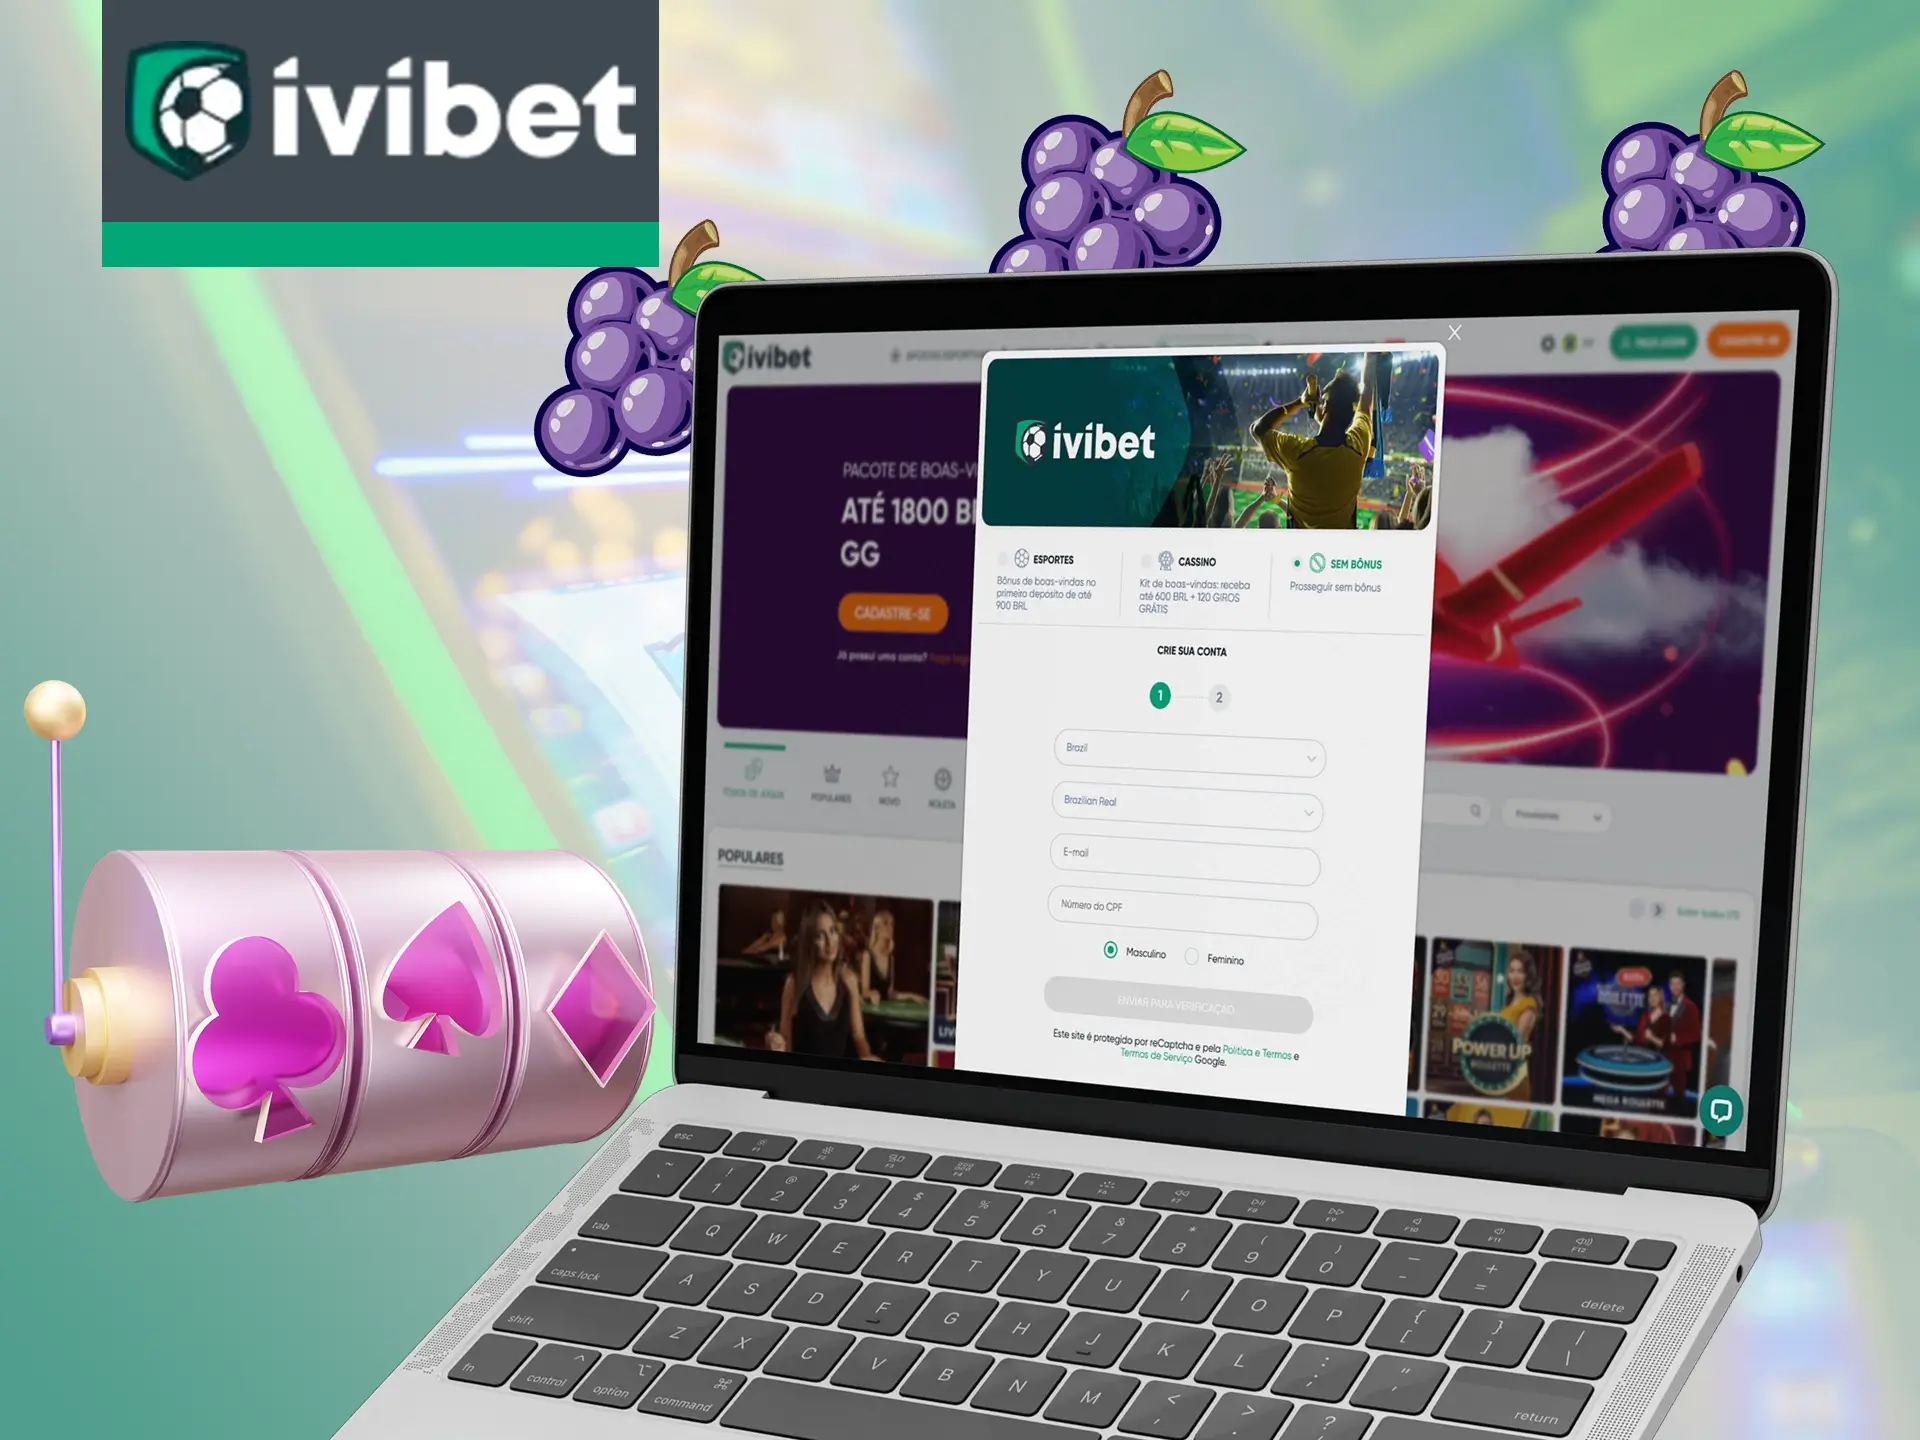 Basta se registrar no site da Ivibet e começar a ganhar.